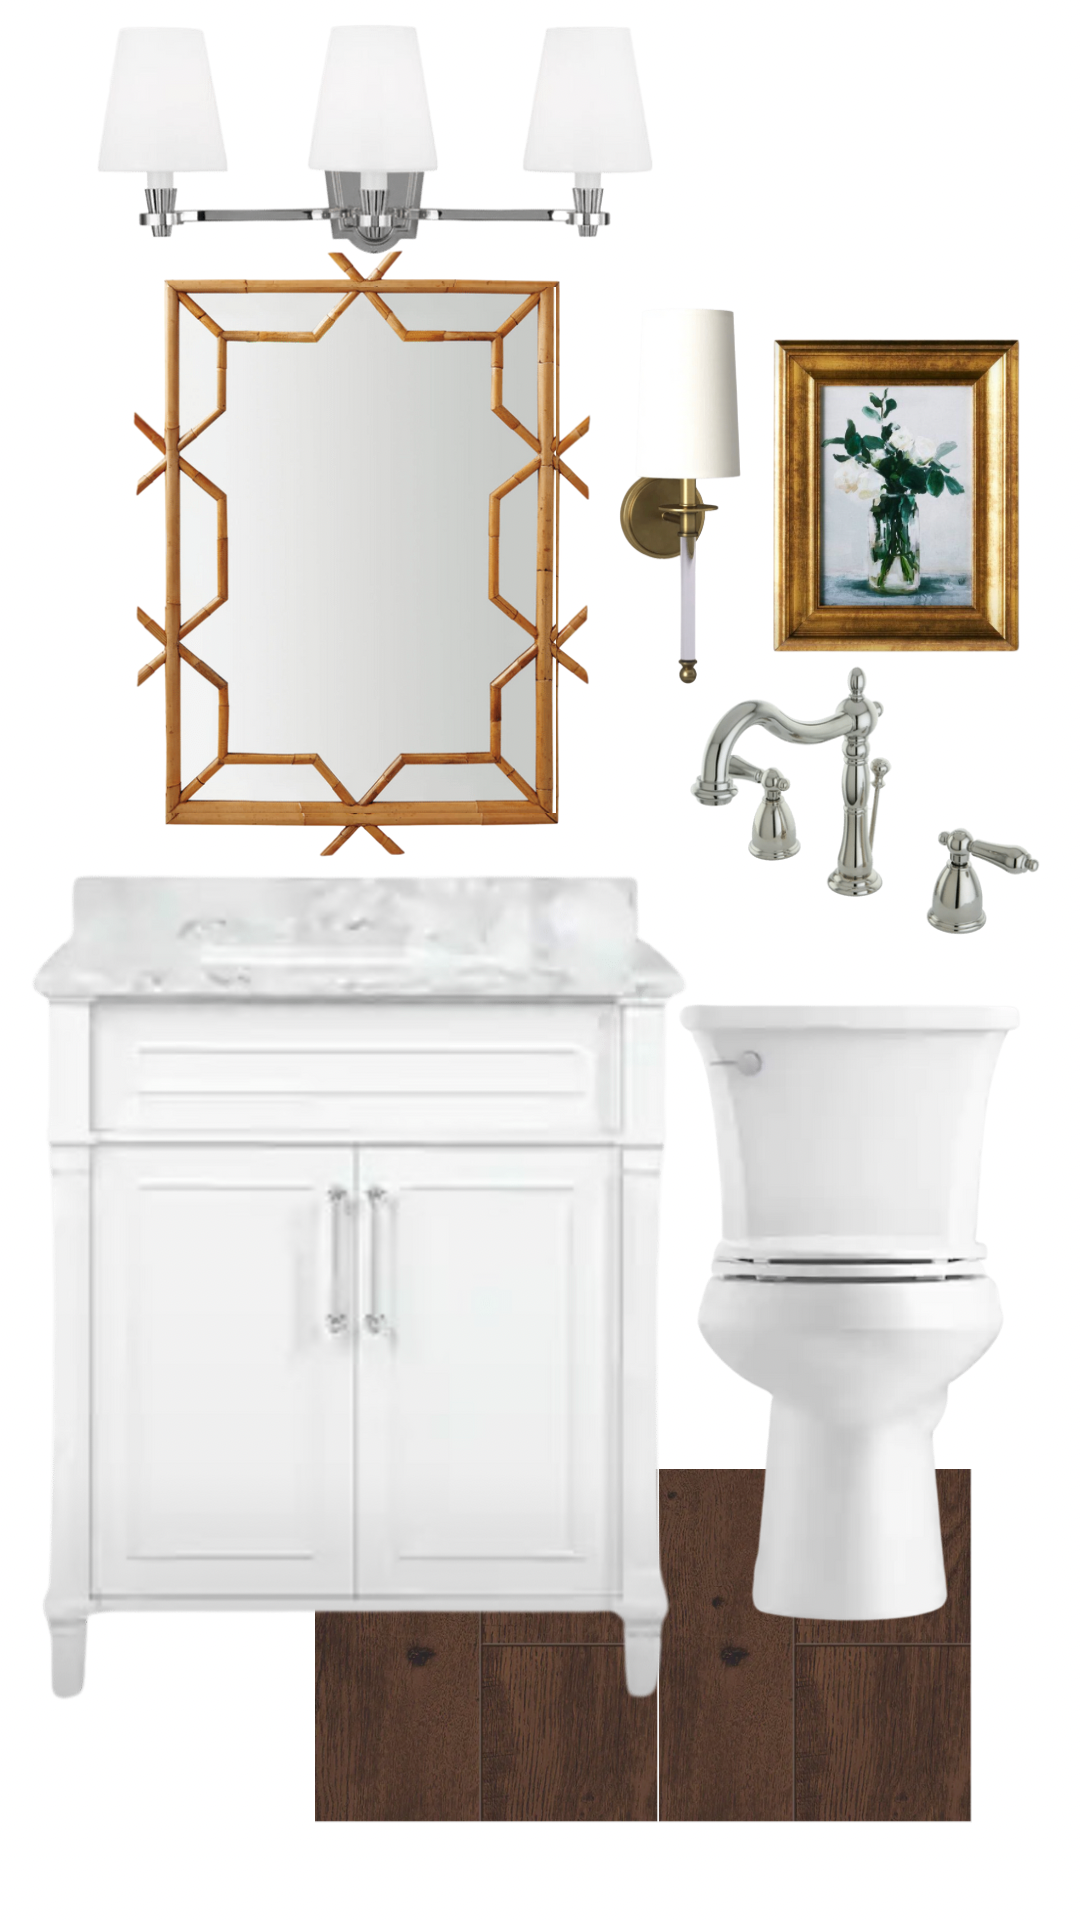 My Powder Bathroom – Designing a Bathroom Classic Design